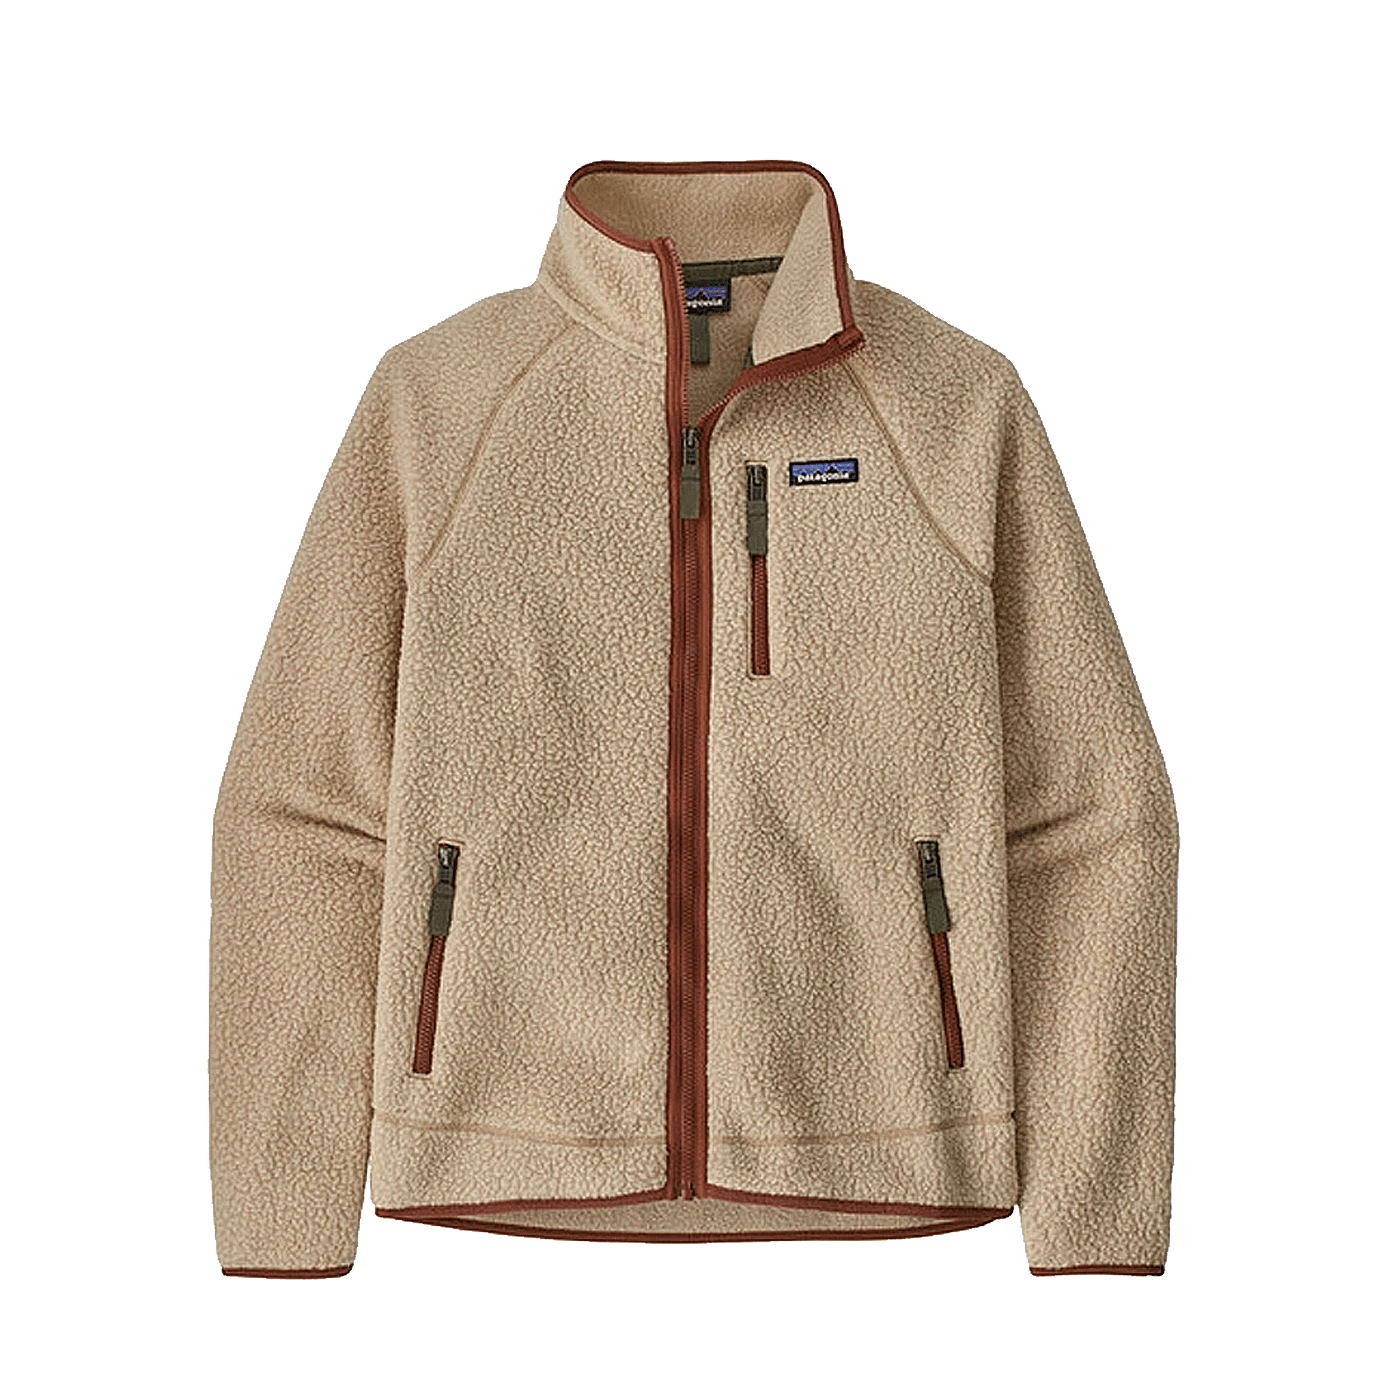 Patagonia Classic Retro Jacket Khaki Brown